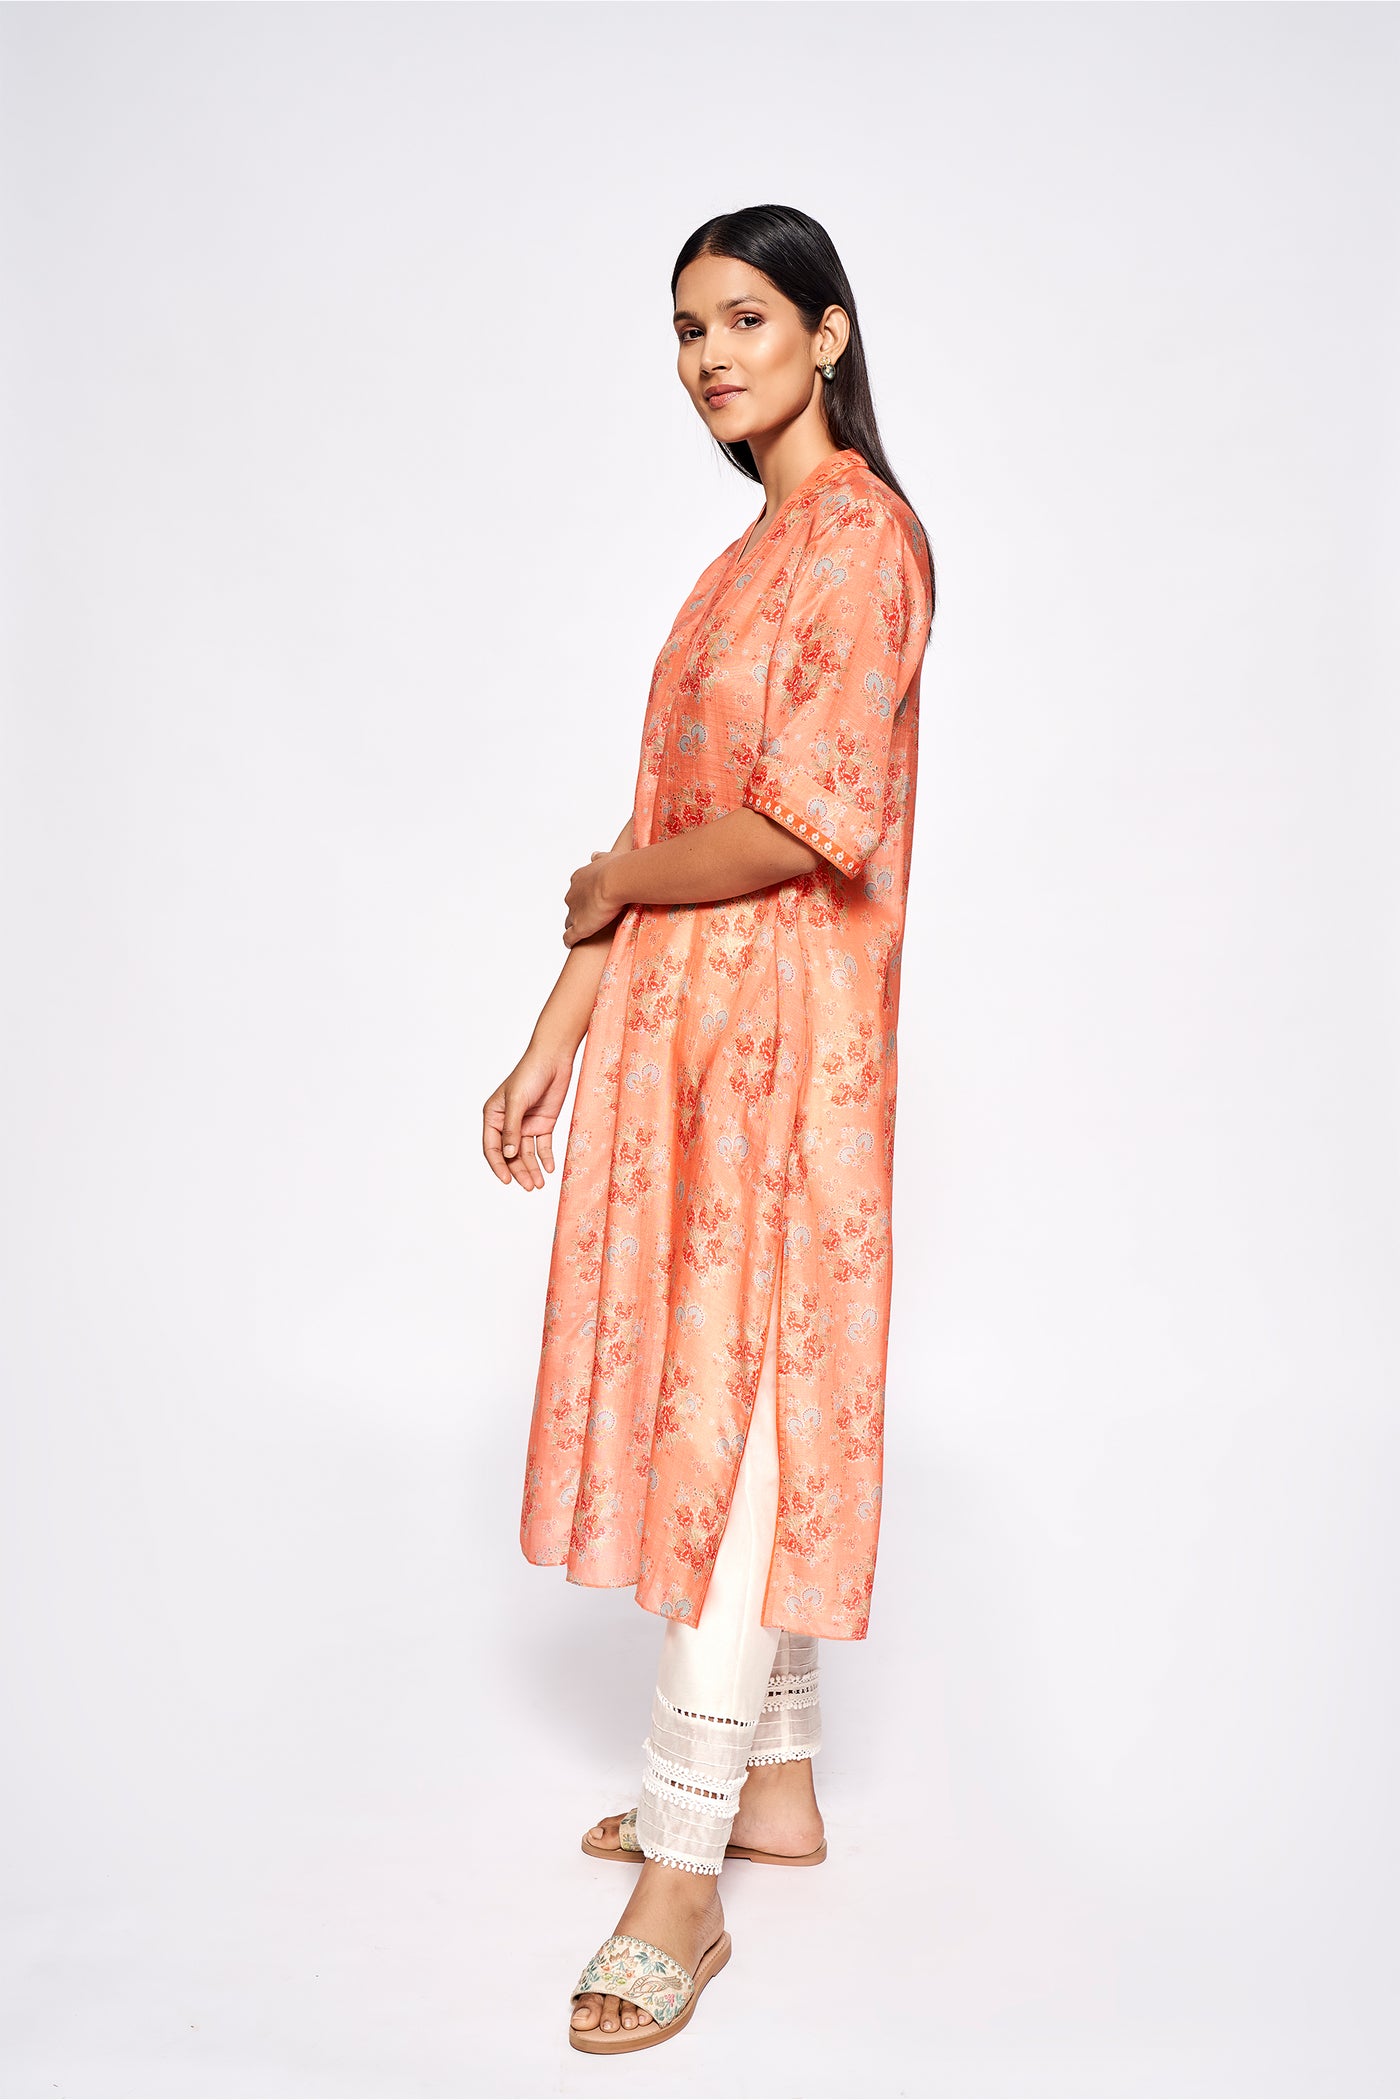 Anita Dongre Miran Kurta Orange indian designer wear online shopping melange singapore